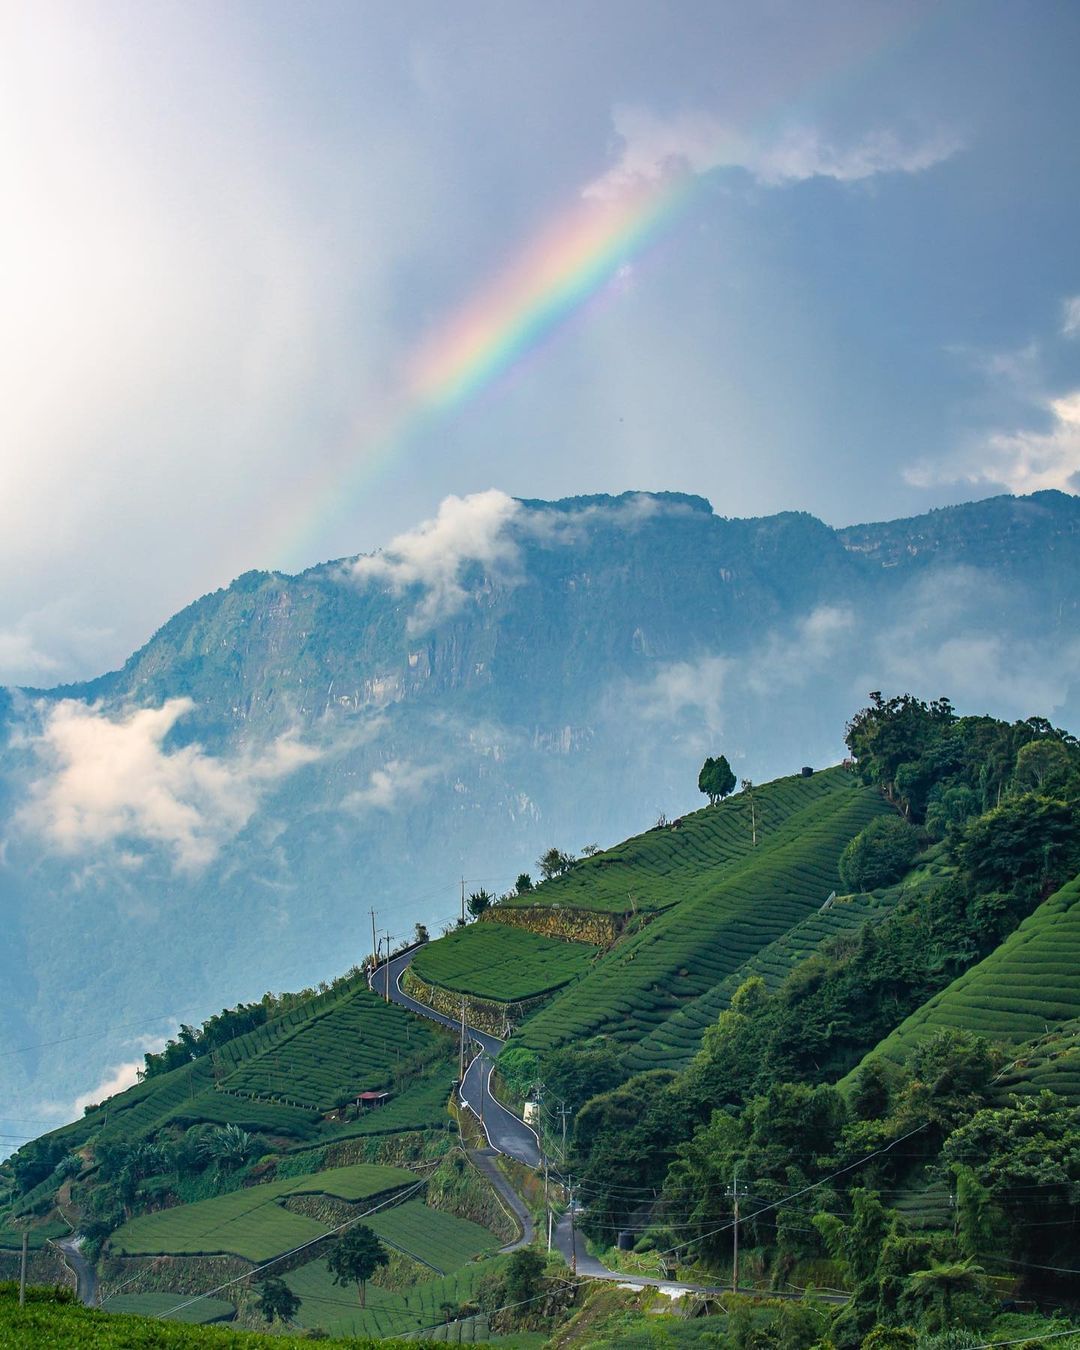 無法言語的景色_________彩虹與山巒的融合，前景是層層推疊茶園，形成絕美的一幅畫。照片授權 @liweicheng0411 ...